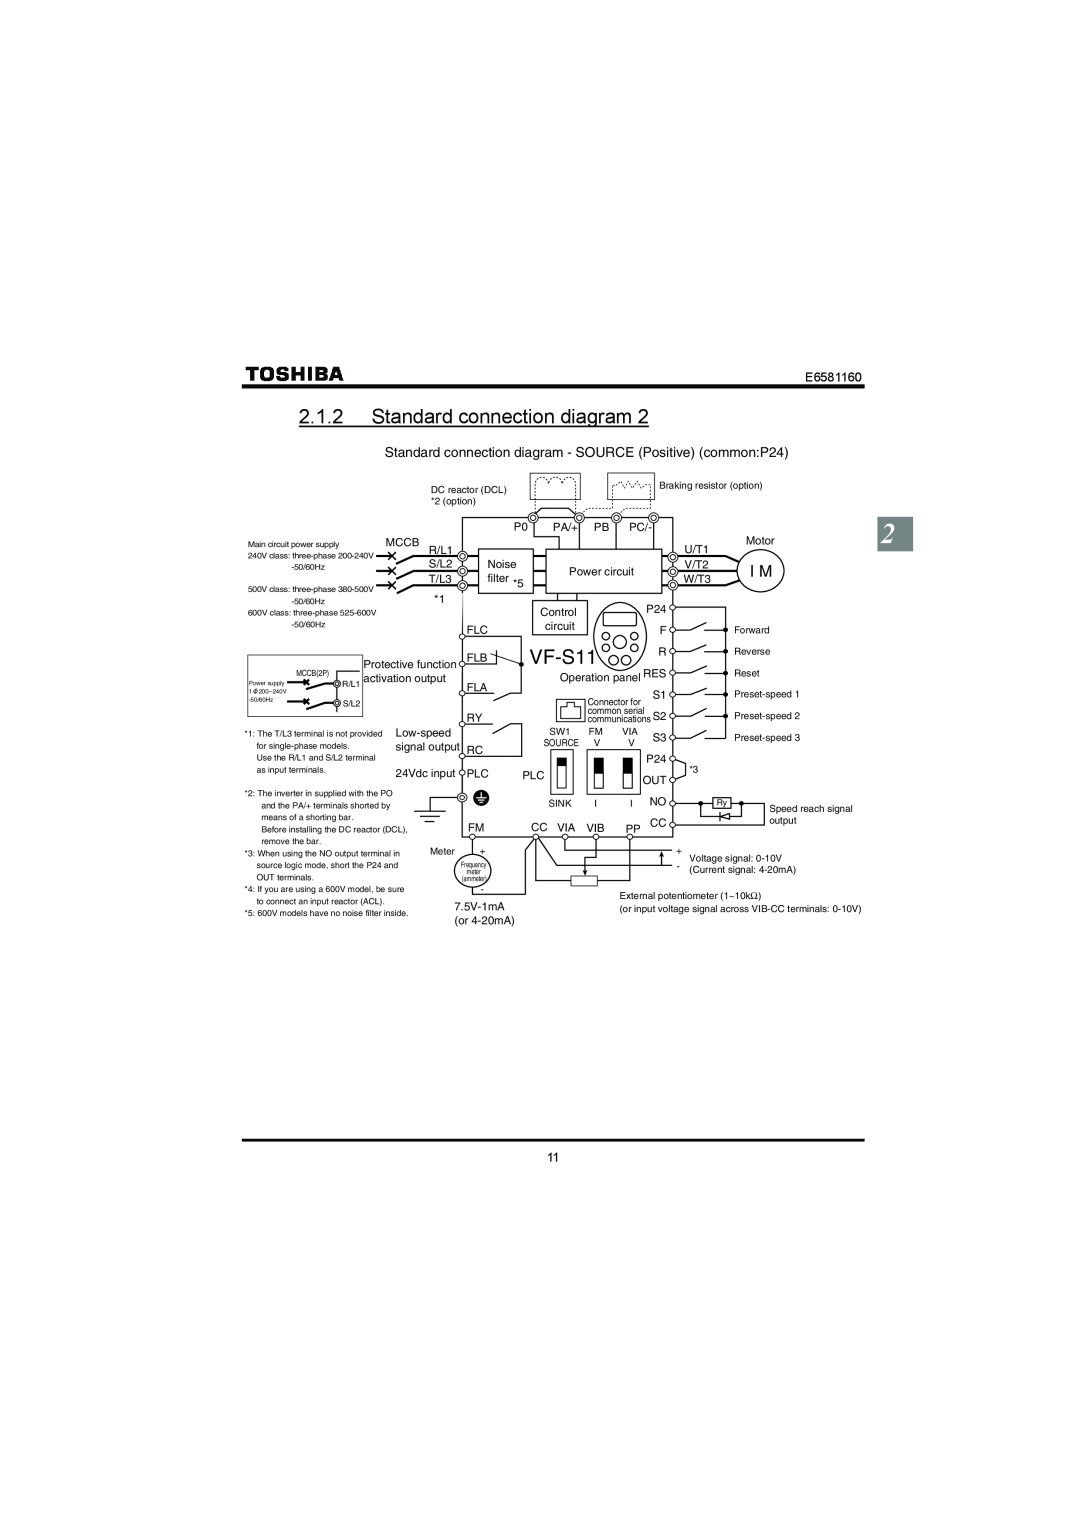 Toshiba VF-S11 manual 2.1.2Standard connection diagram, E6581160 